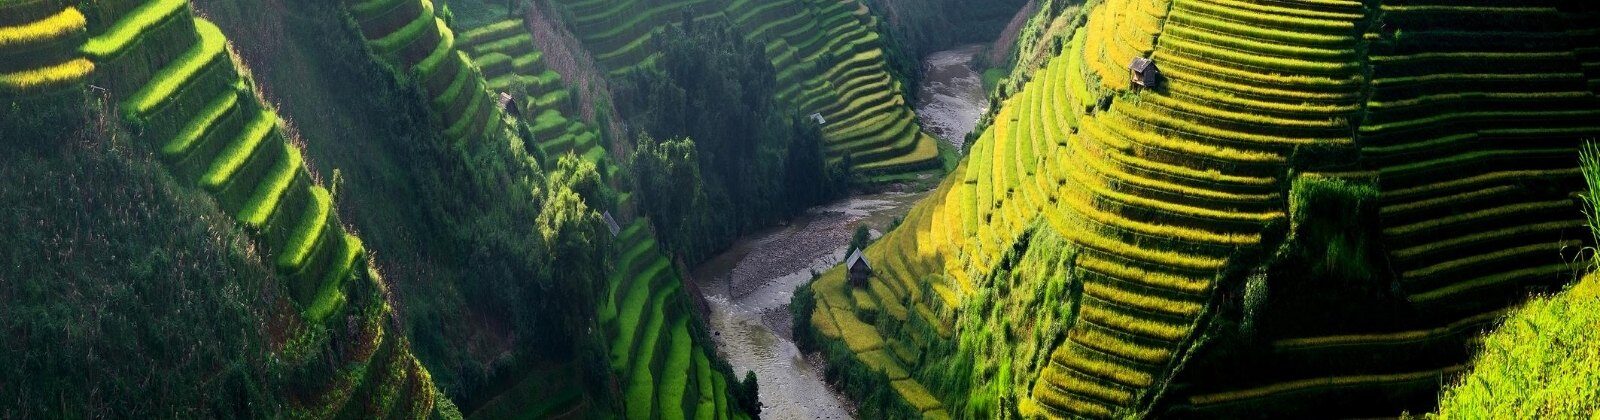 terraced rice fields in vietnam